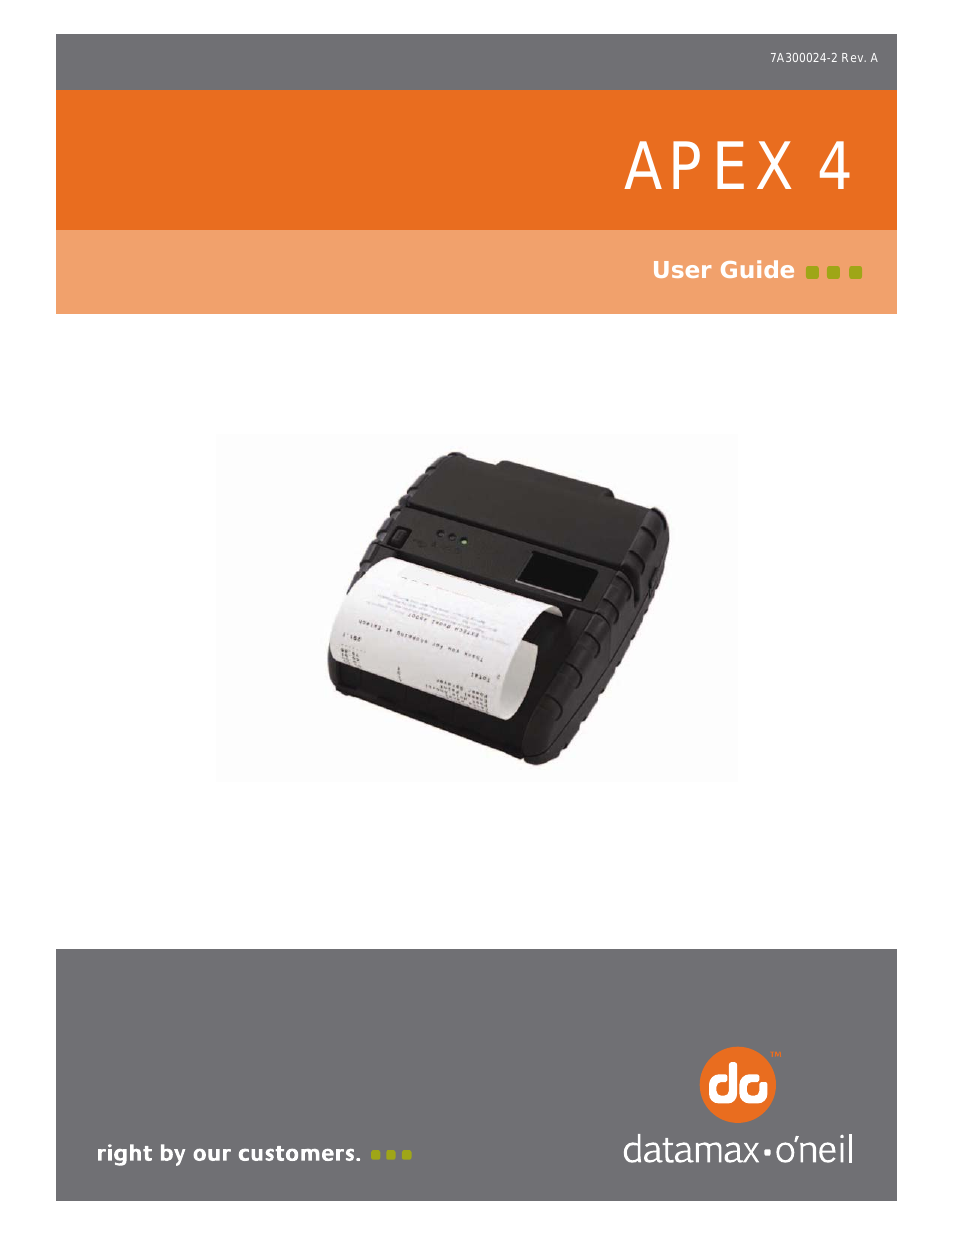 APEX 4 User Guide